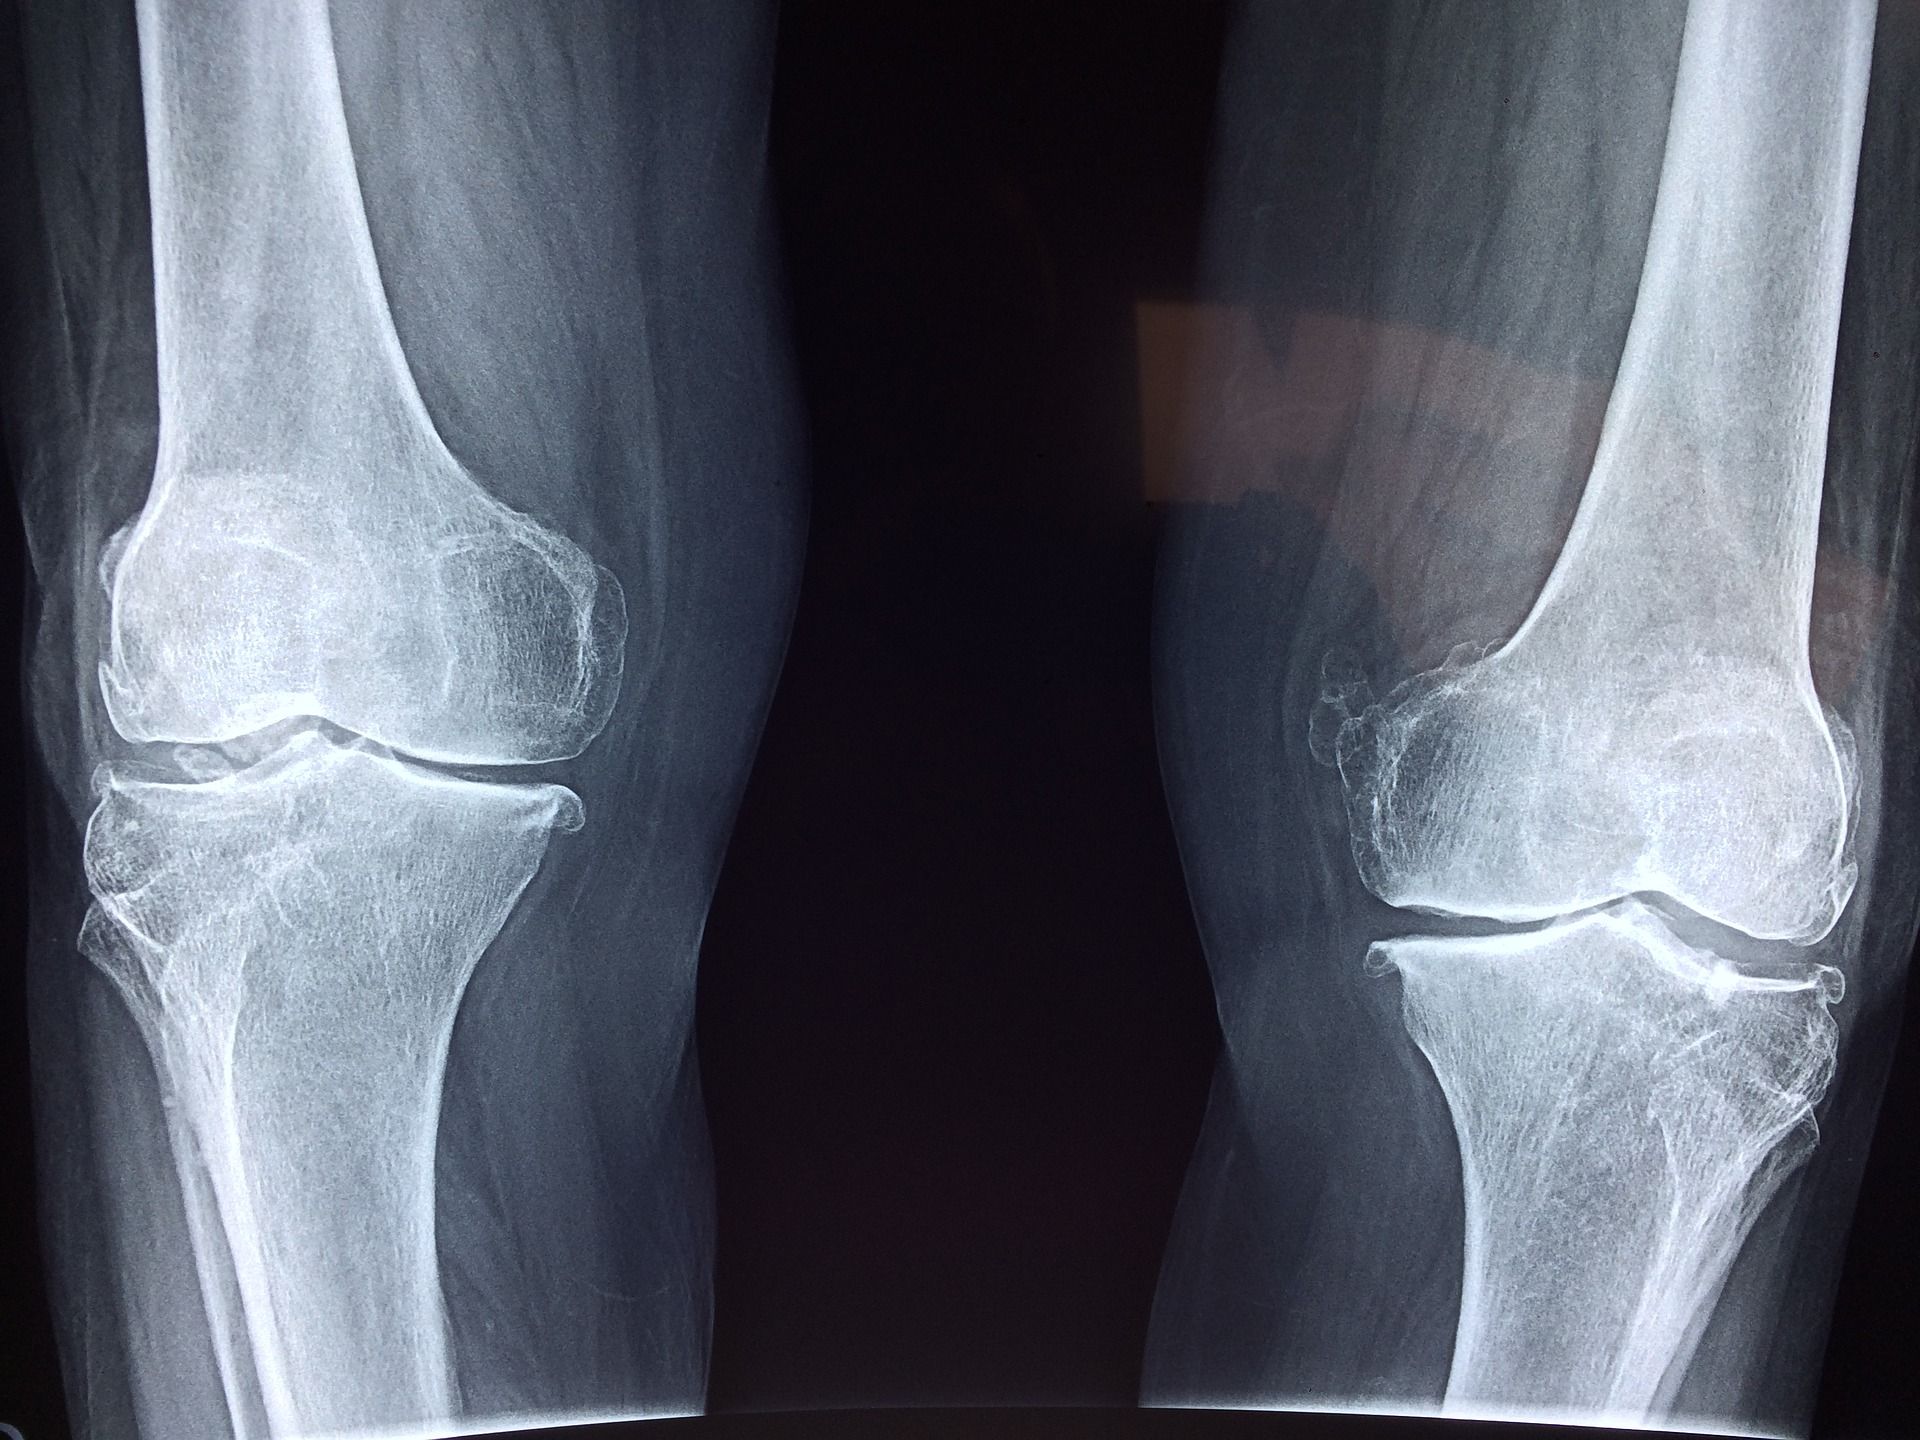 csípőízületi arthrosis 1 fokozatú kezelés térd bursitis sérülés után